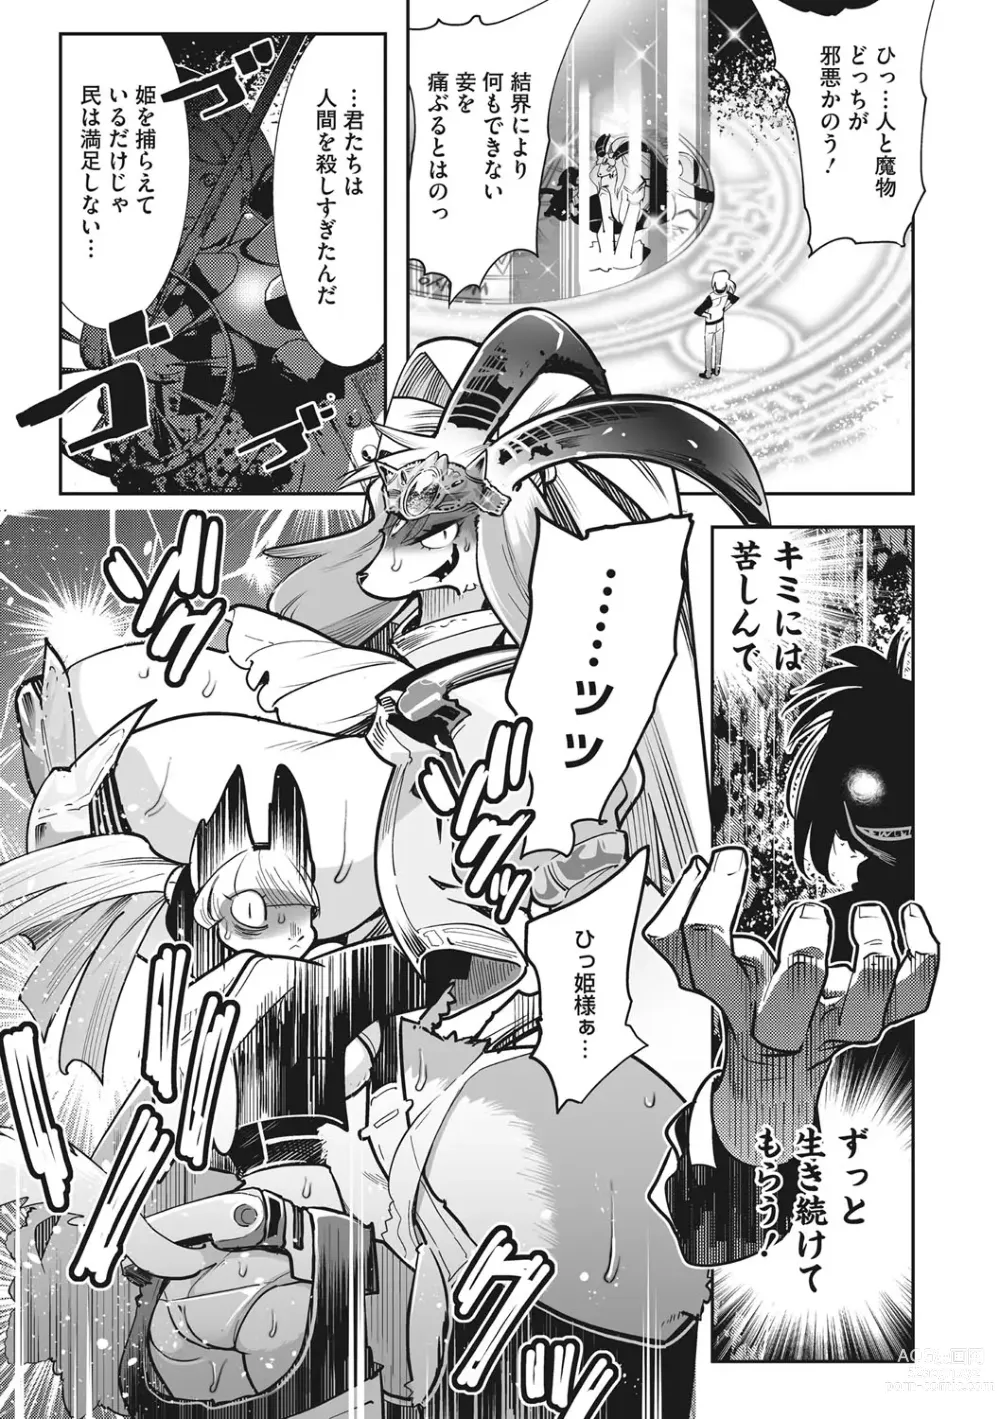 Page 10 of manga Kemono to Koishite Nani ga Warui!